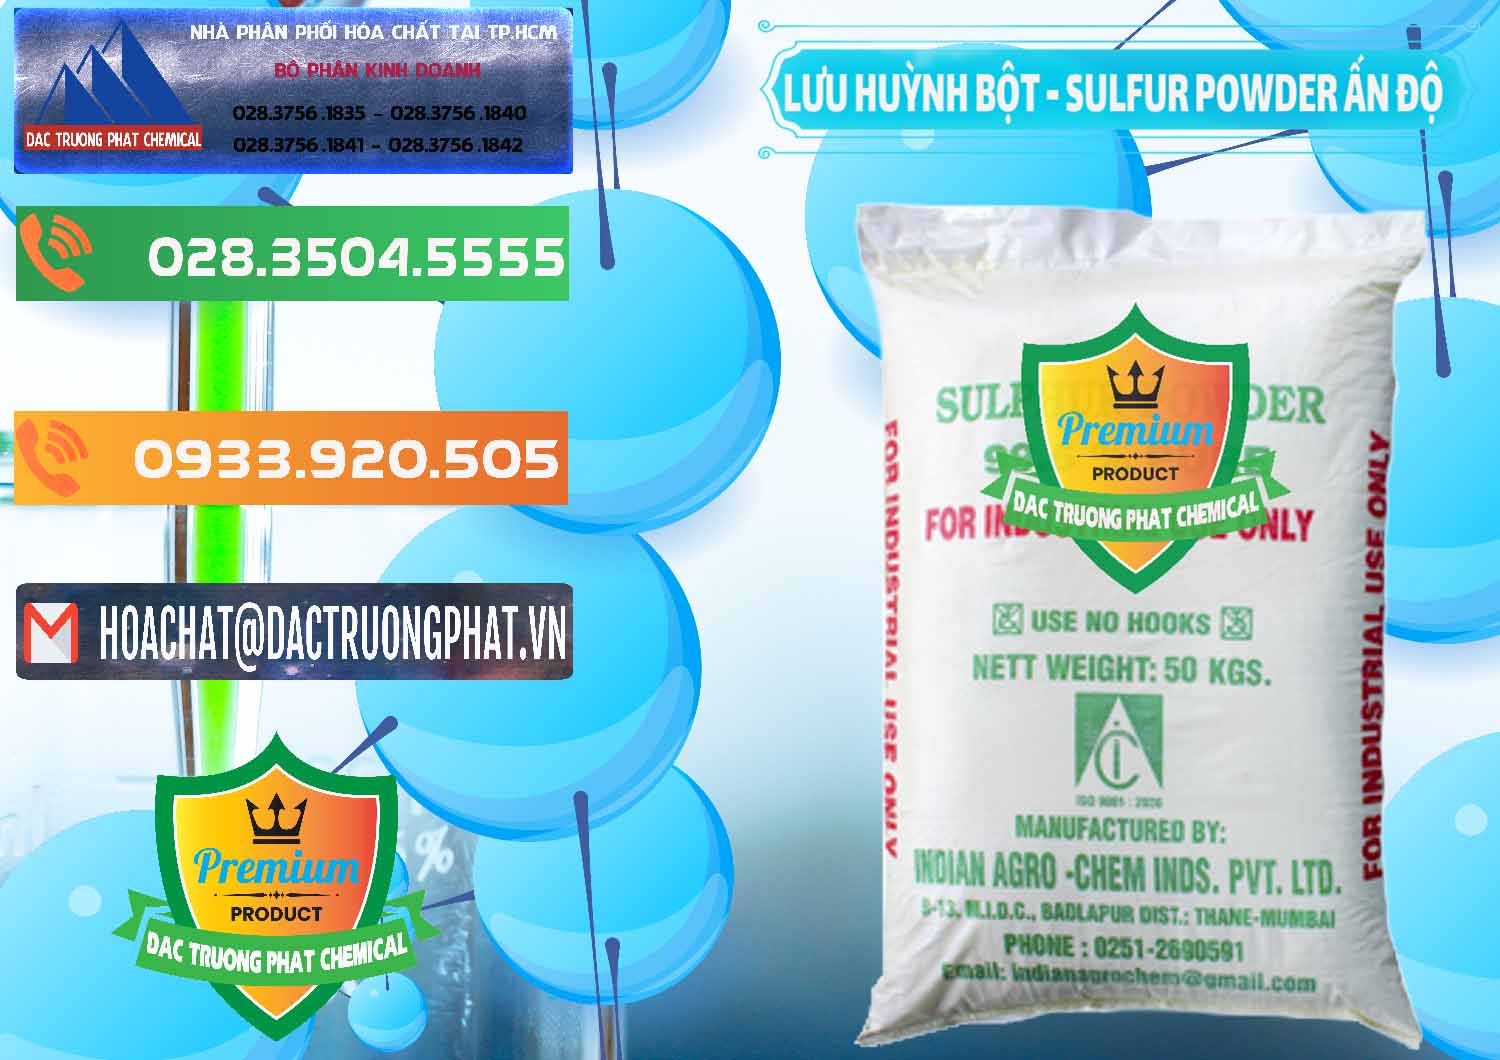 Công ty bán - cung ứng Lưu huỳnh Bột - Sulfur Powder Ấn Độ India - 0347 - Chuyên cung ứng _ phân phối hóa chất tại TP.HCM - hoachatxulynuoc.com.vn